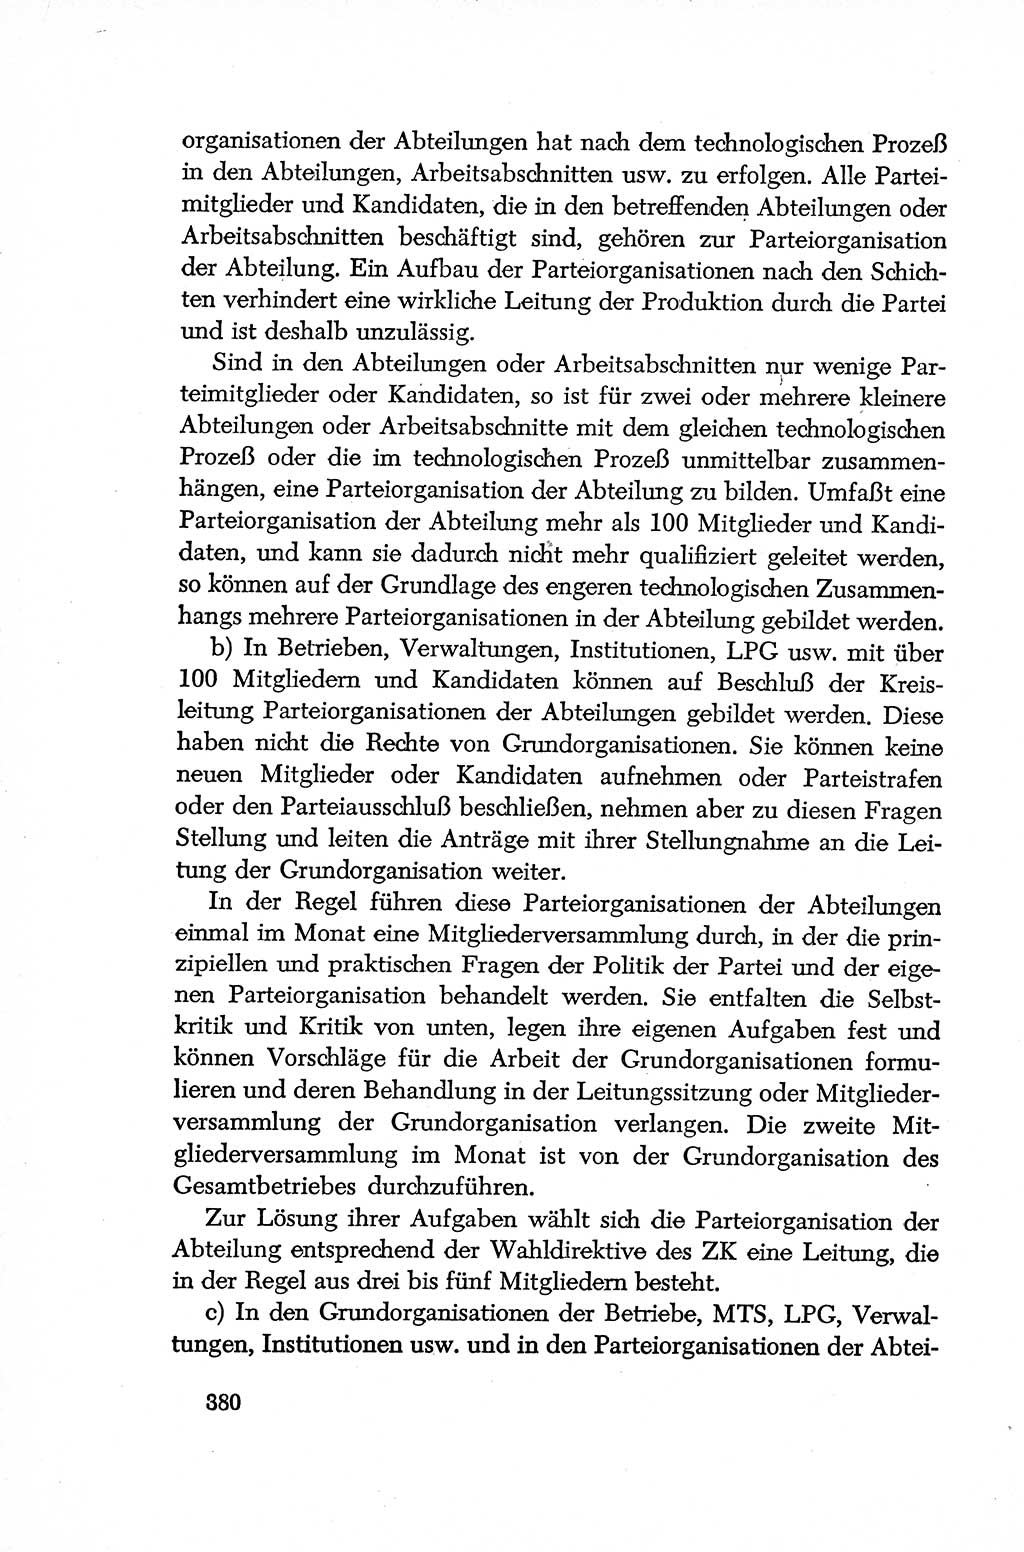 Dokumente der Sozialistischen Einheitspartei Deutschlands (SED) [Deutsche Demokratische Republik (DDR)] 1952-1953, Seite 380 (Dok. SED DDR 1952-1953, S. 380)